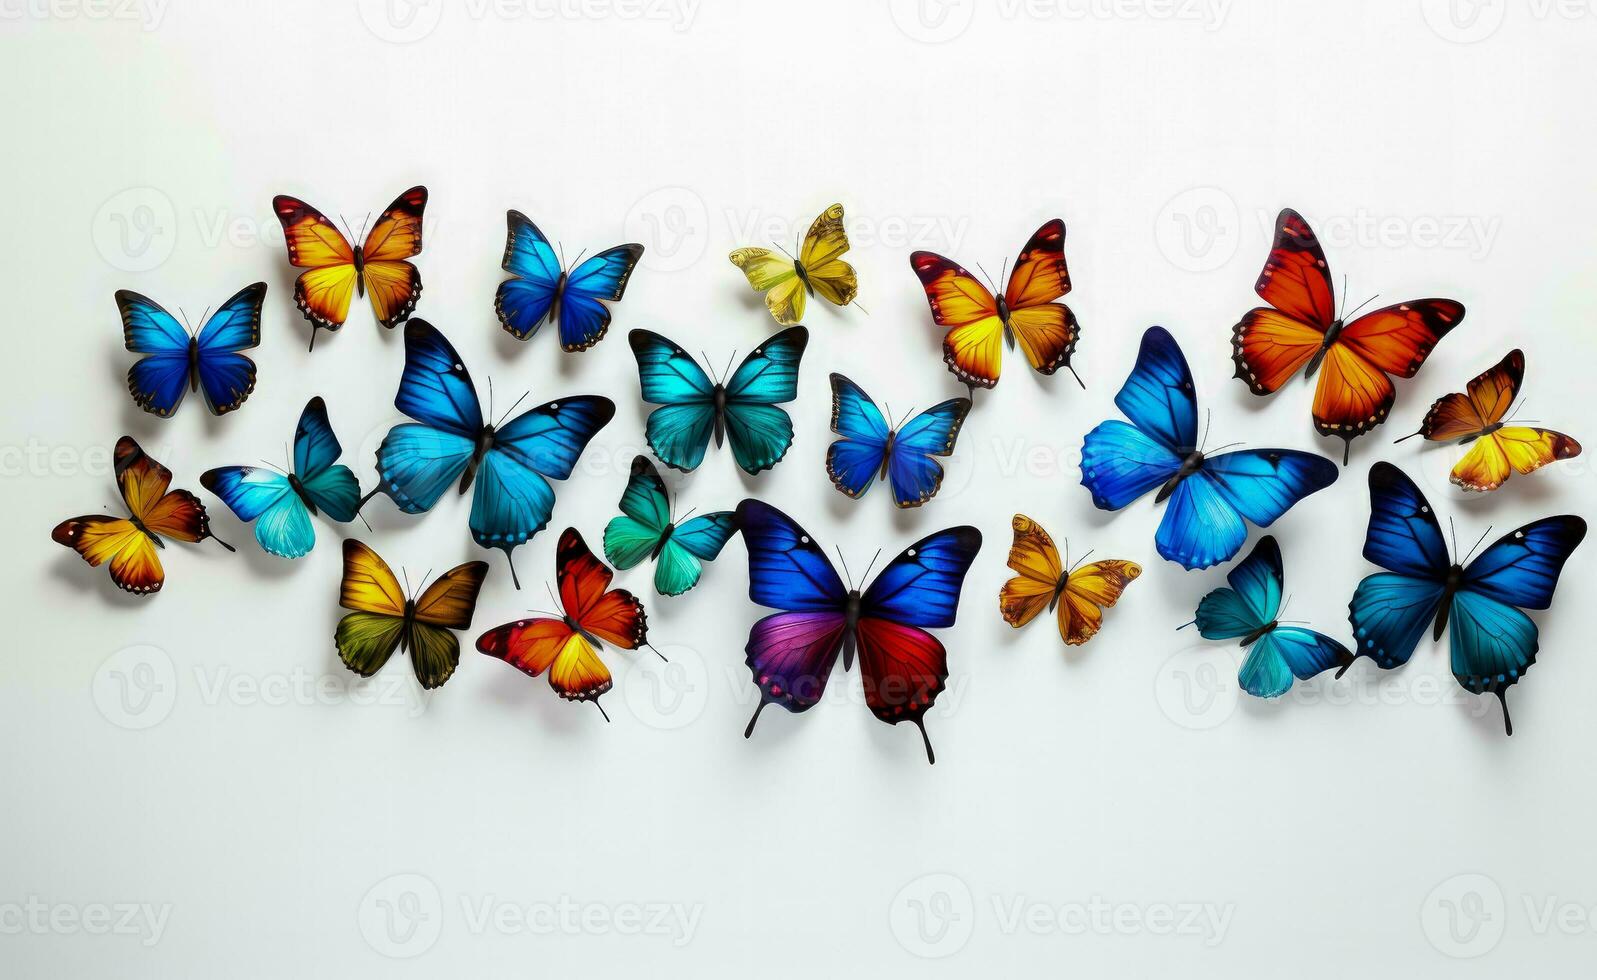 fjärilar graciöst fladdra på en ren vit bakgrund foto